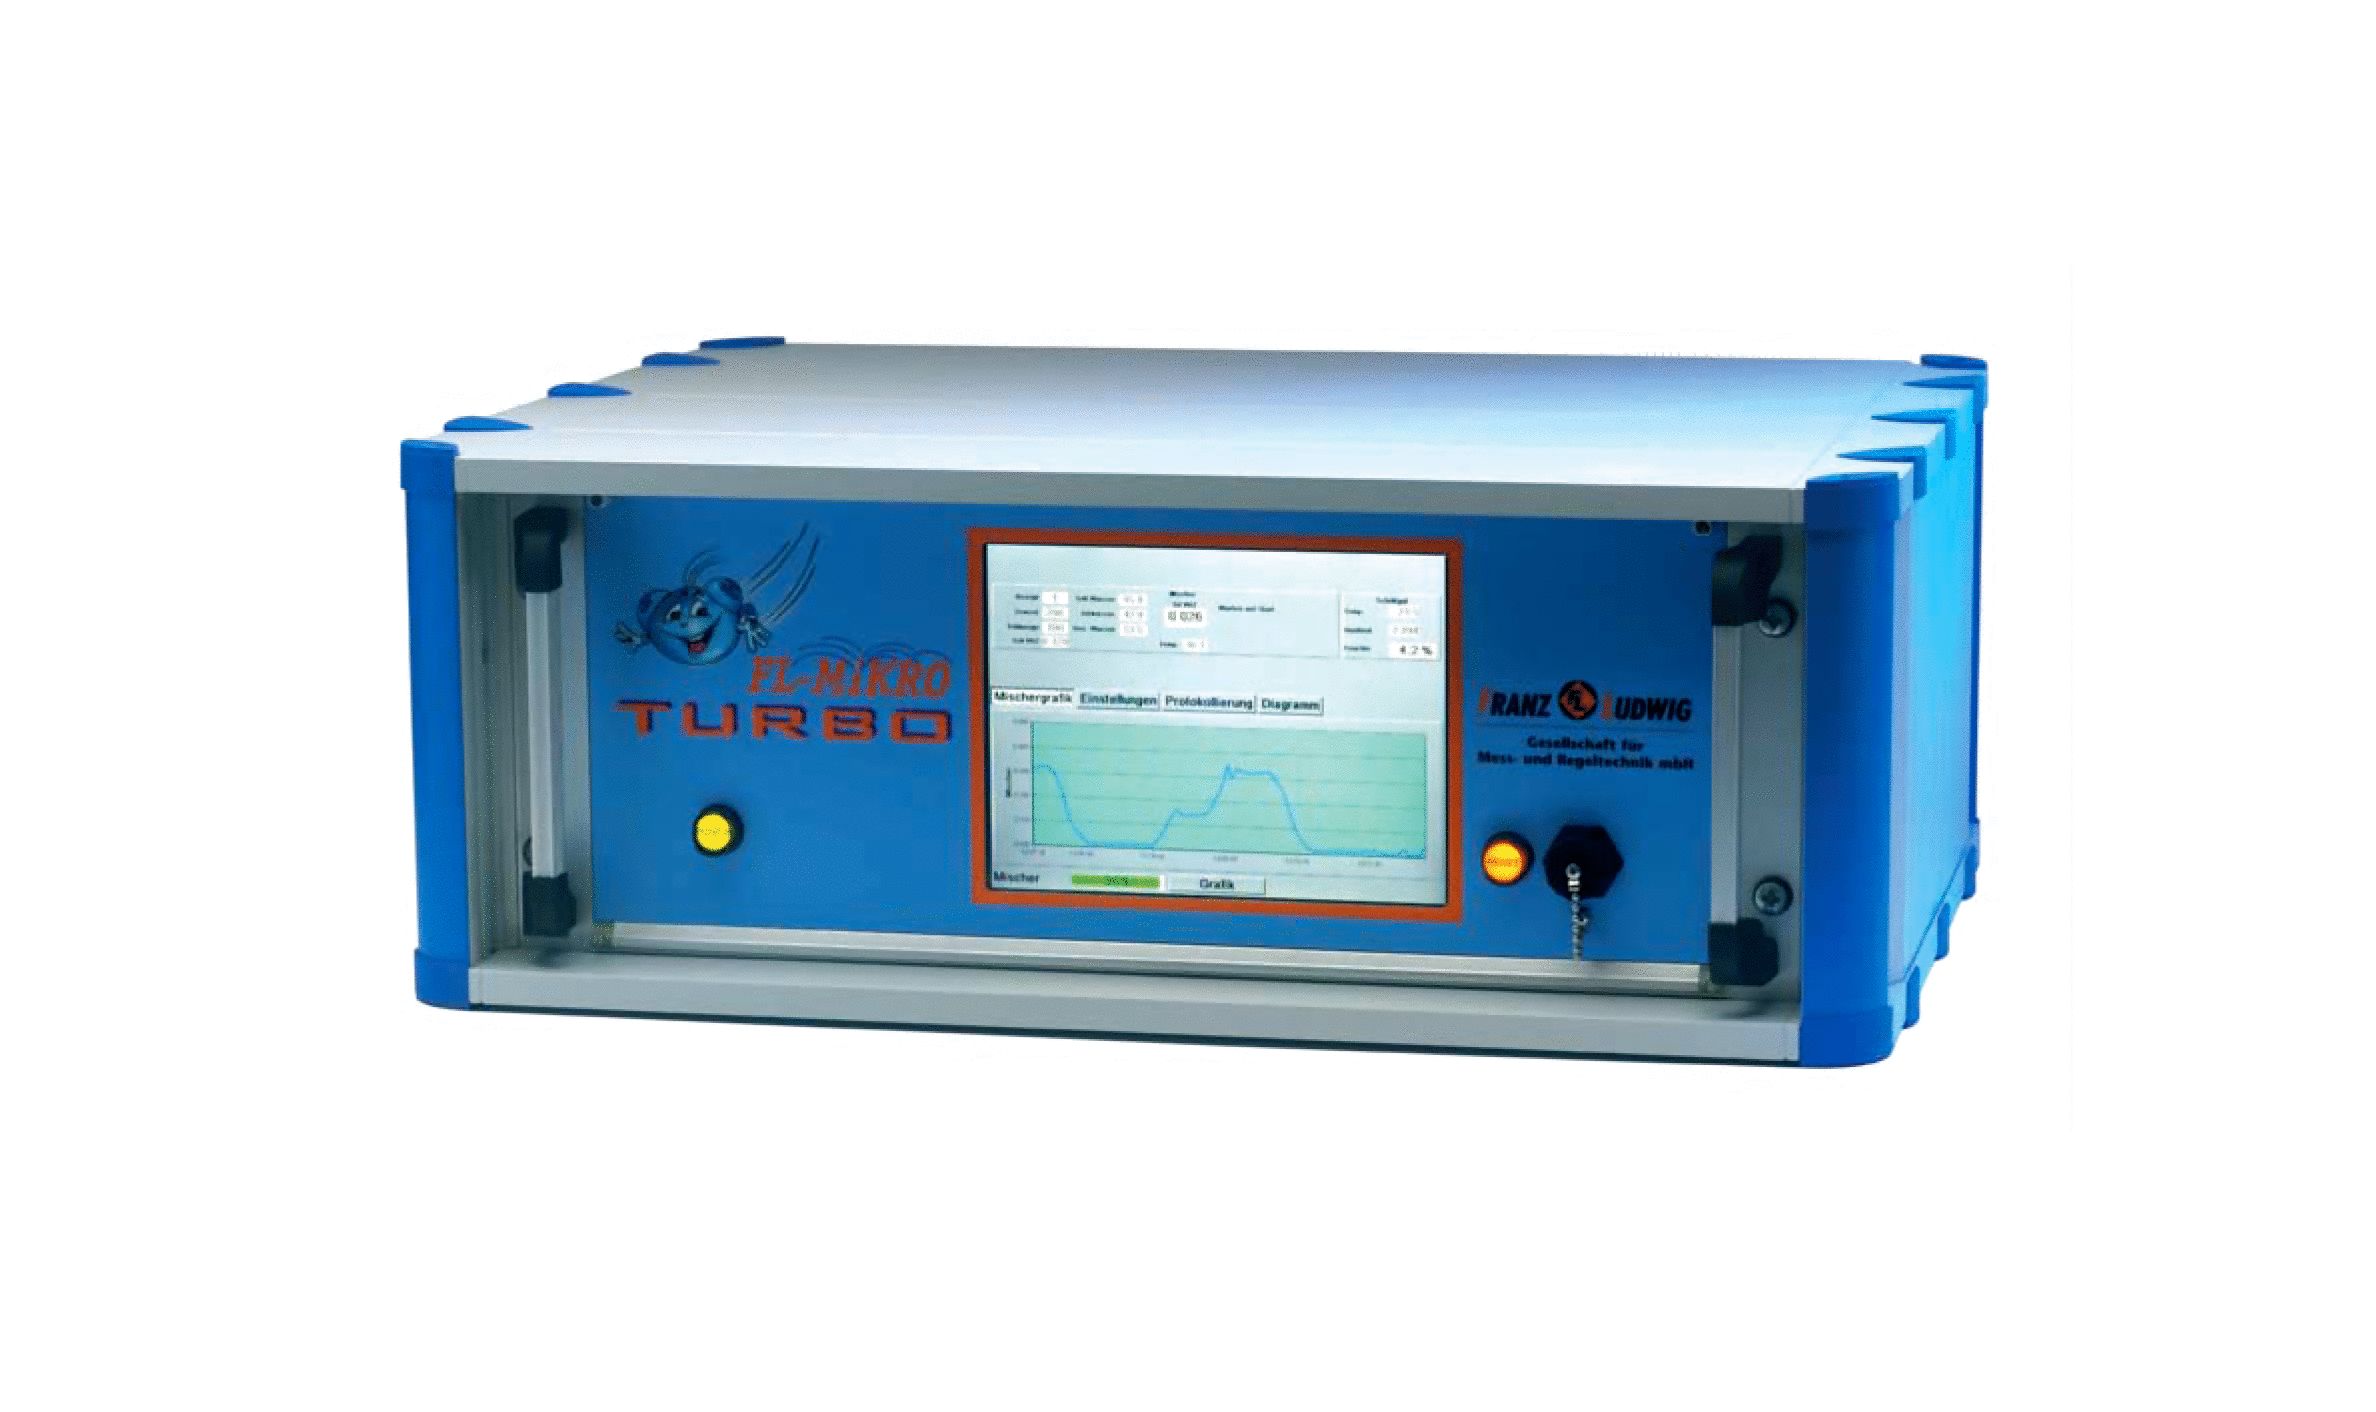 Controlador para dosificación de agua, combinación hasta 4 sondas